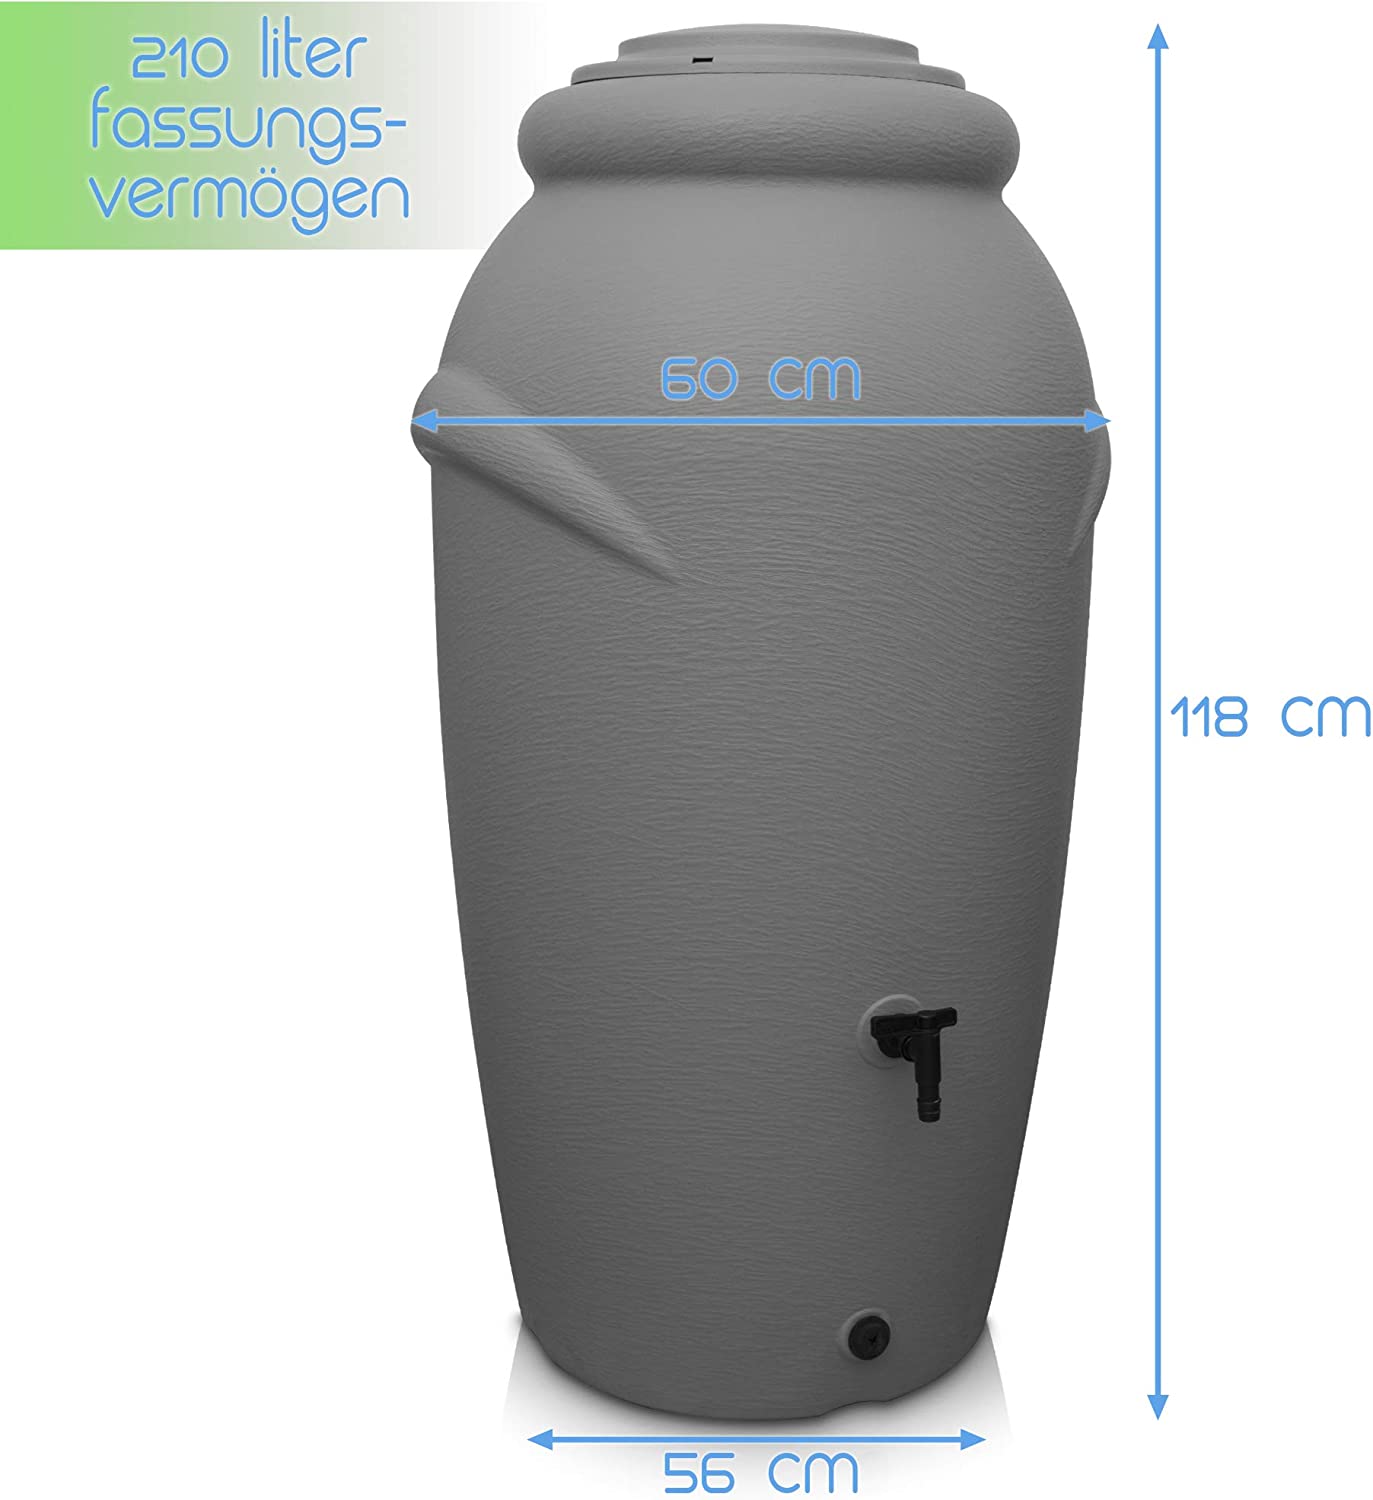 Eine graue Regentonne aus Kunststoff mit 210 Litern Fassungsvermögen – Amphore Design von yourcasa-de, mit einem Deckel, einem Hahn am Boden und Maßen, die ihre Abmessungen angeben: 118 cm Zoll